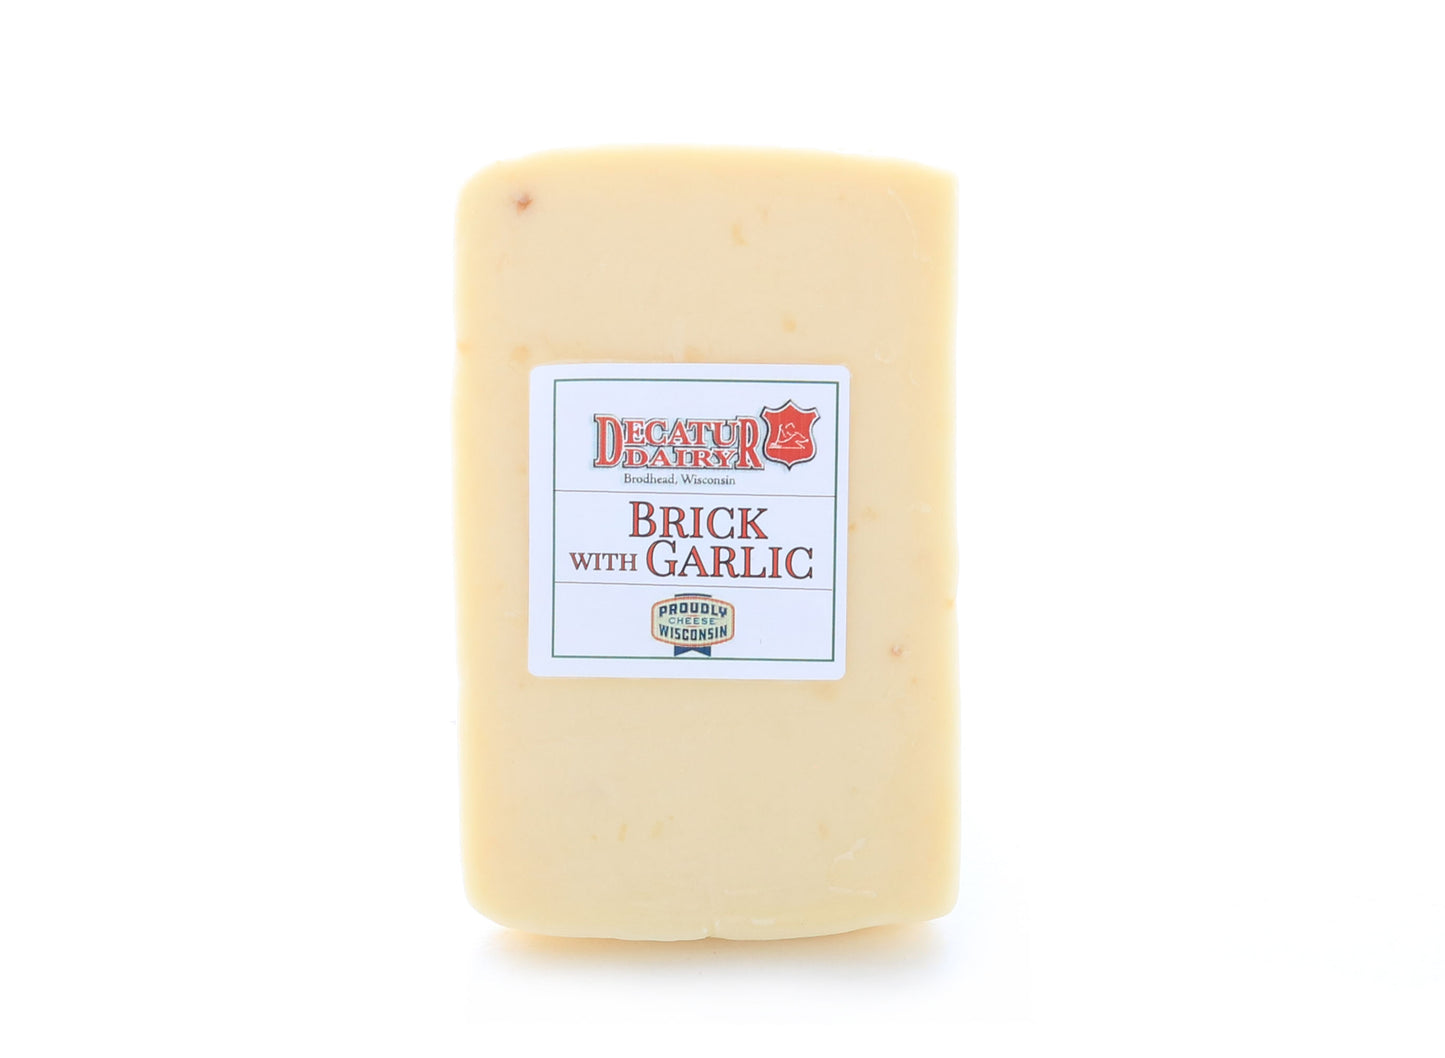 8 ounce piece of garlic brick cheese